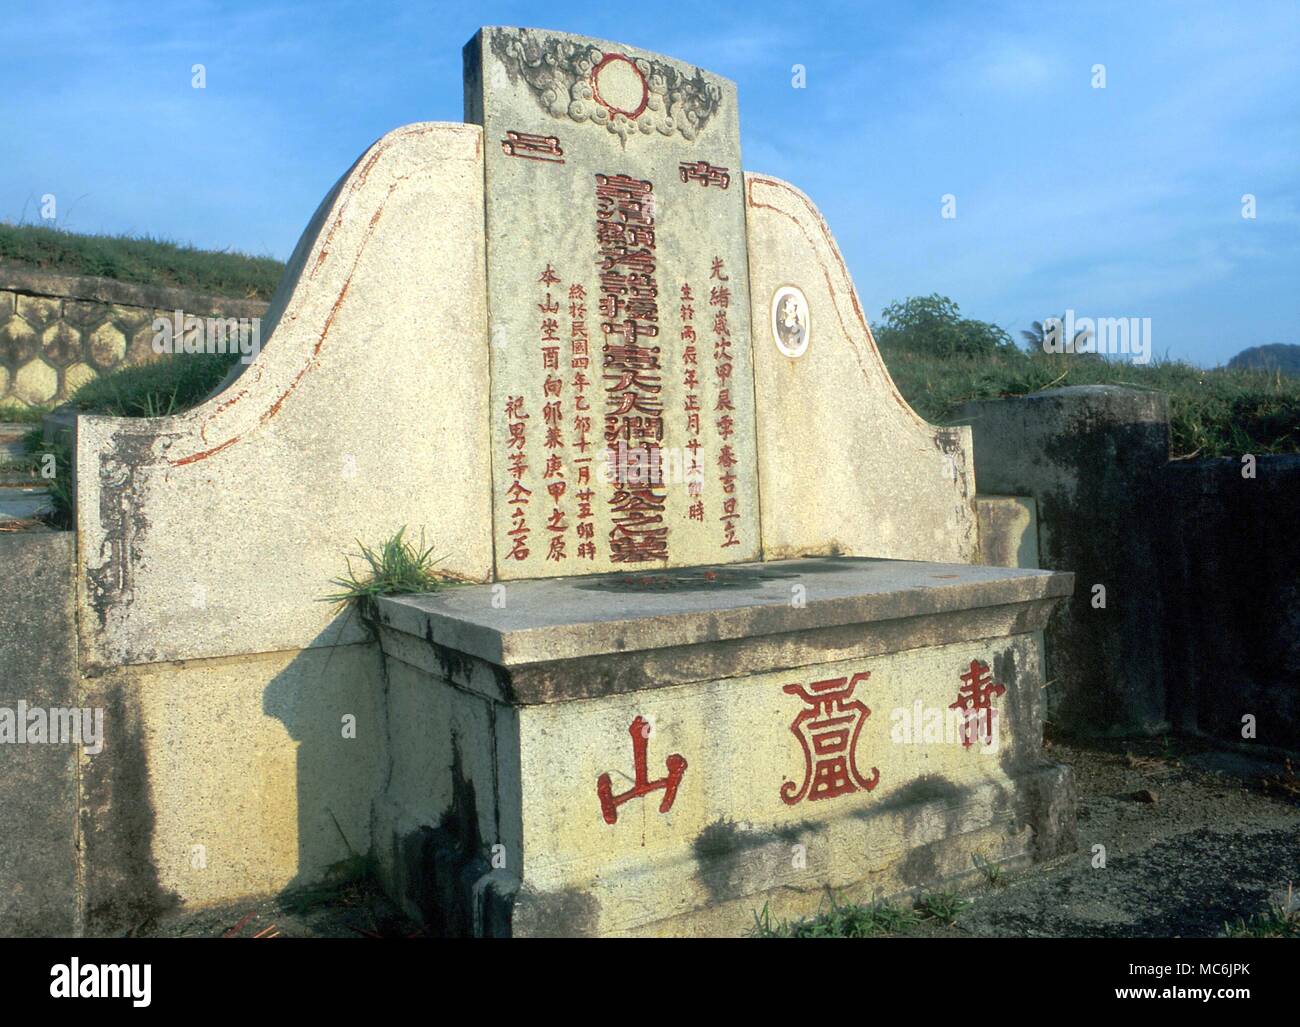 - Le Chinois FENG SHUI tombes disposées selon les principes du Feng Shui, sur une colline (un 'dragon') à Penang, Malaisie Banque D'Images